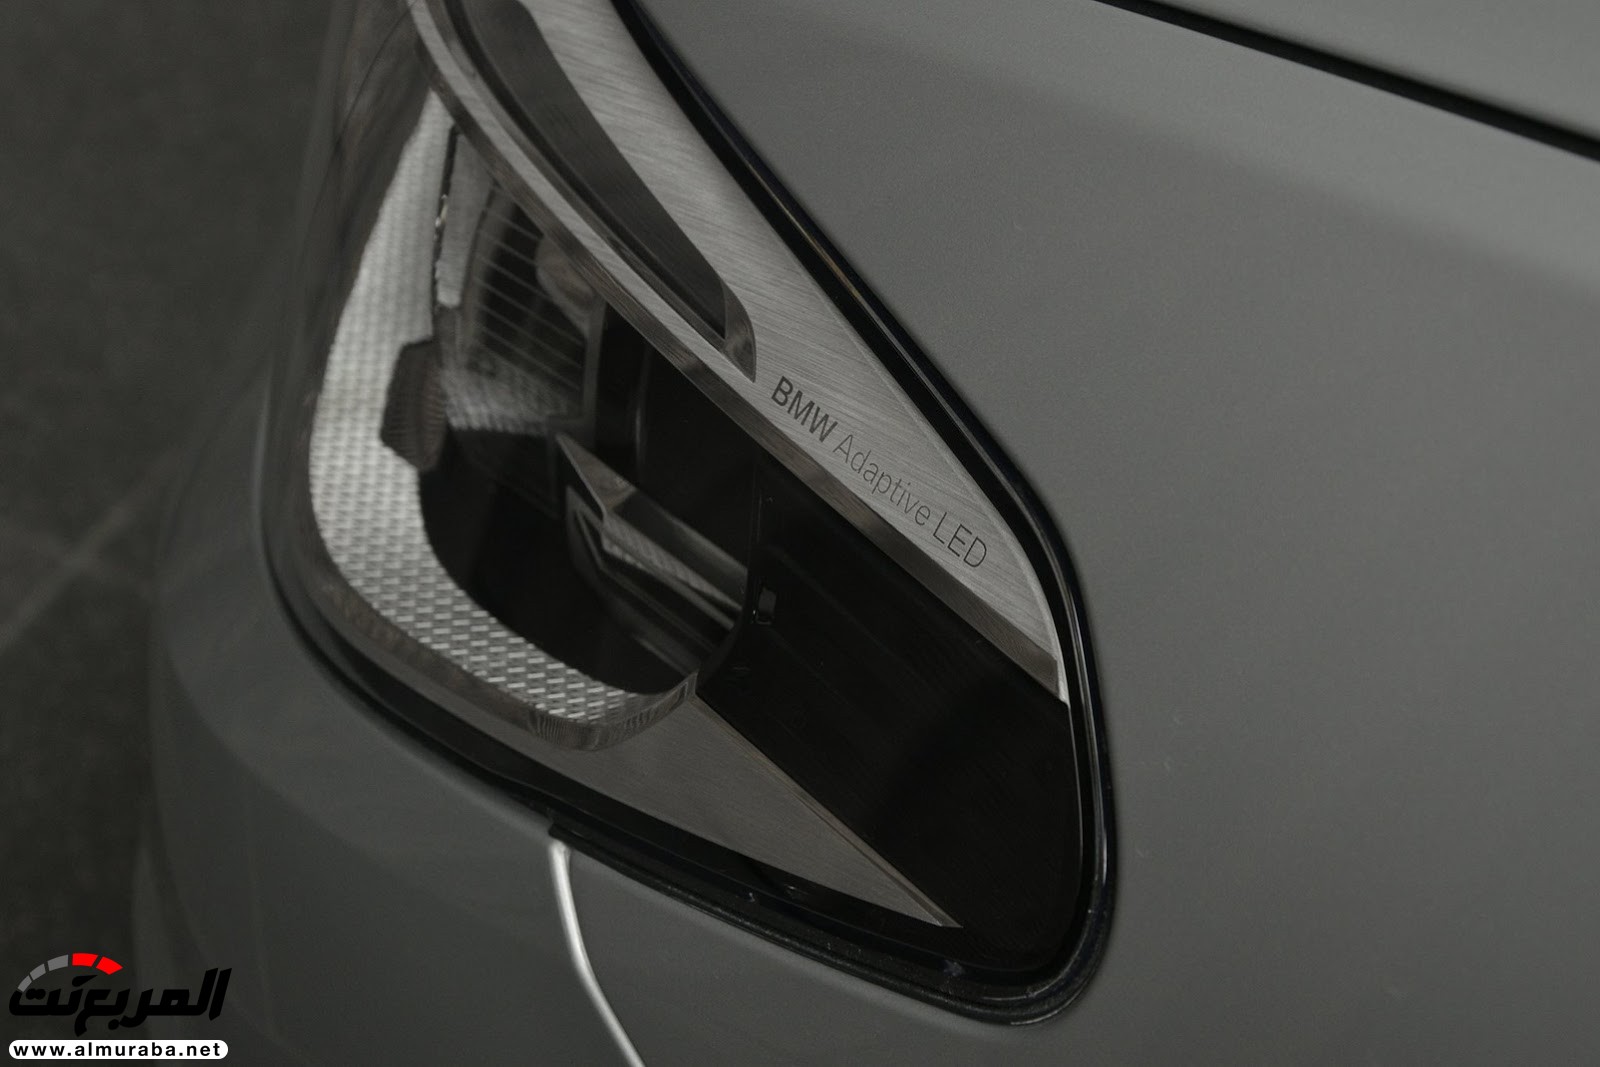 "بي إم دبليو" 540i الجديدة كلياً بتعديلات سبورت لاين معروضة بأبو ظبي BMW 3